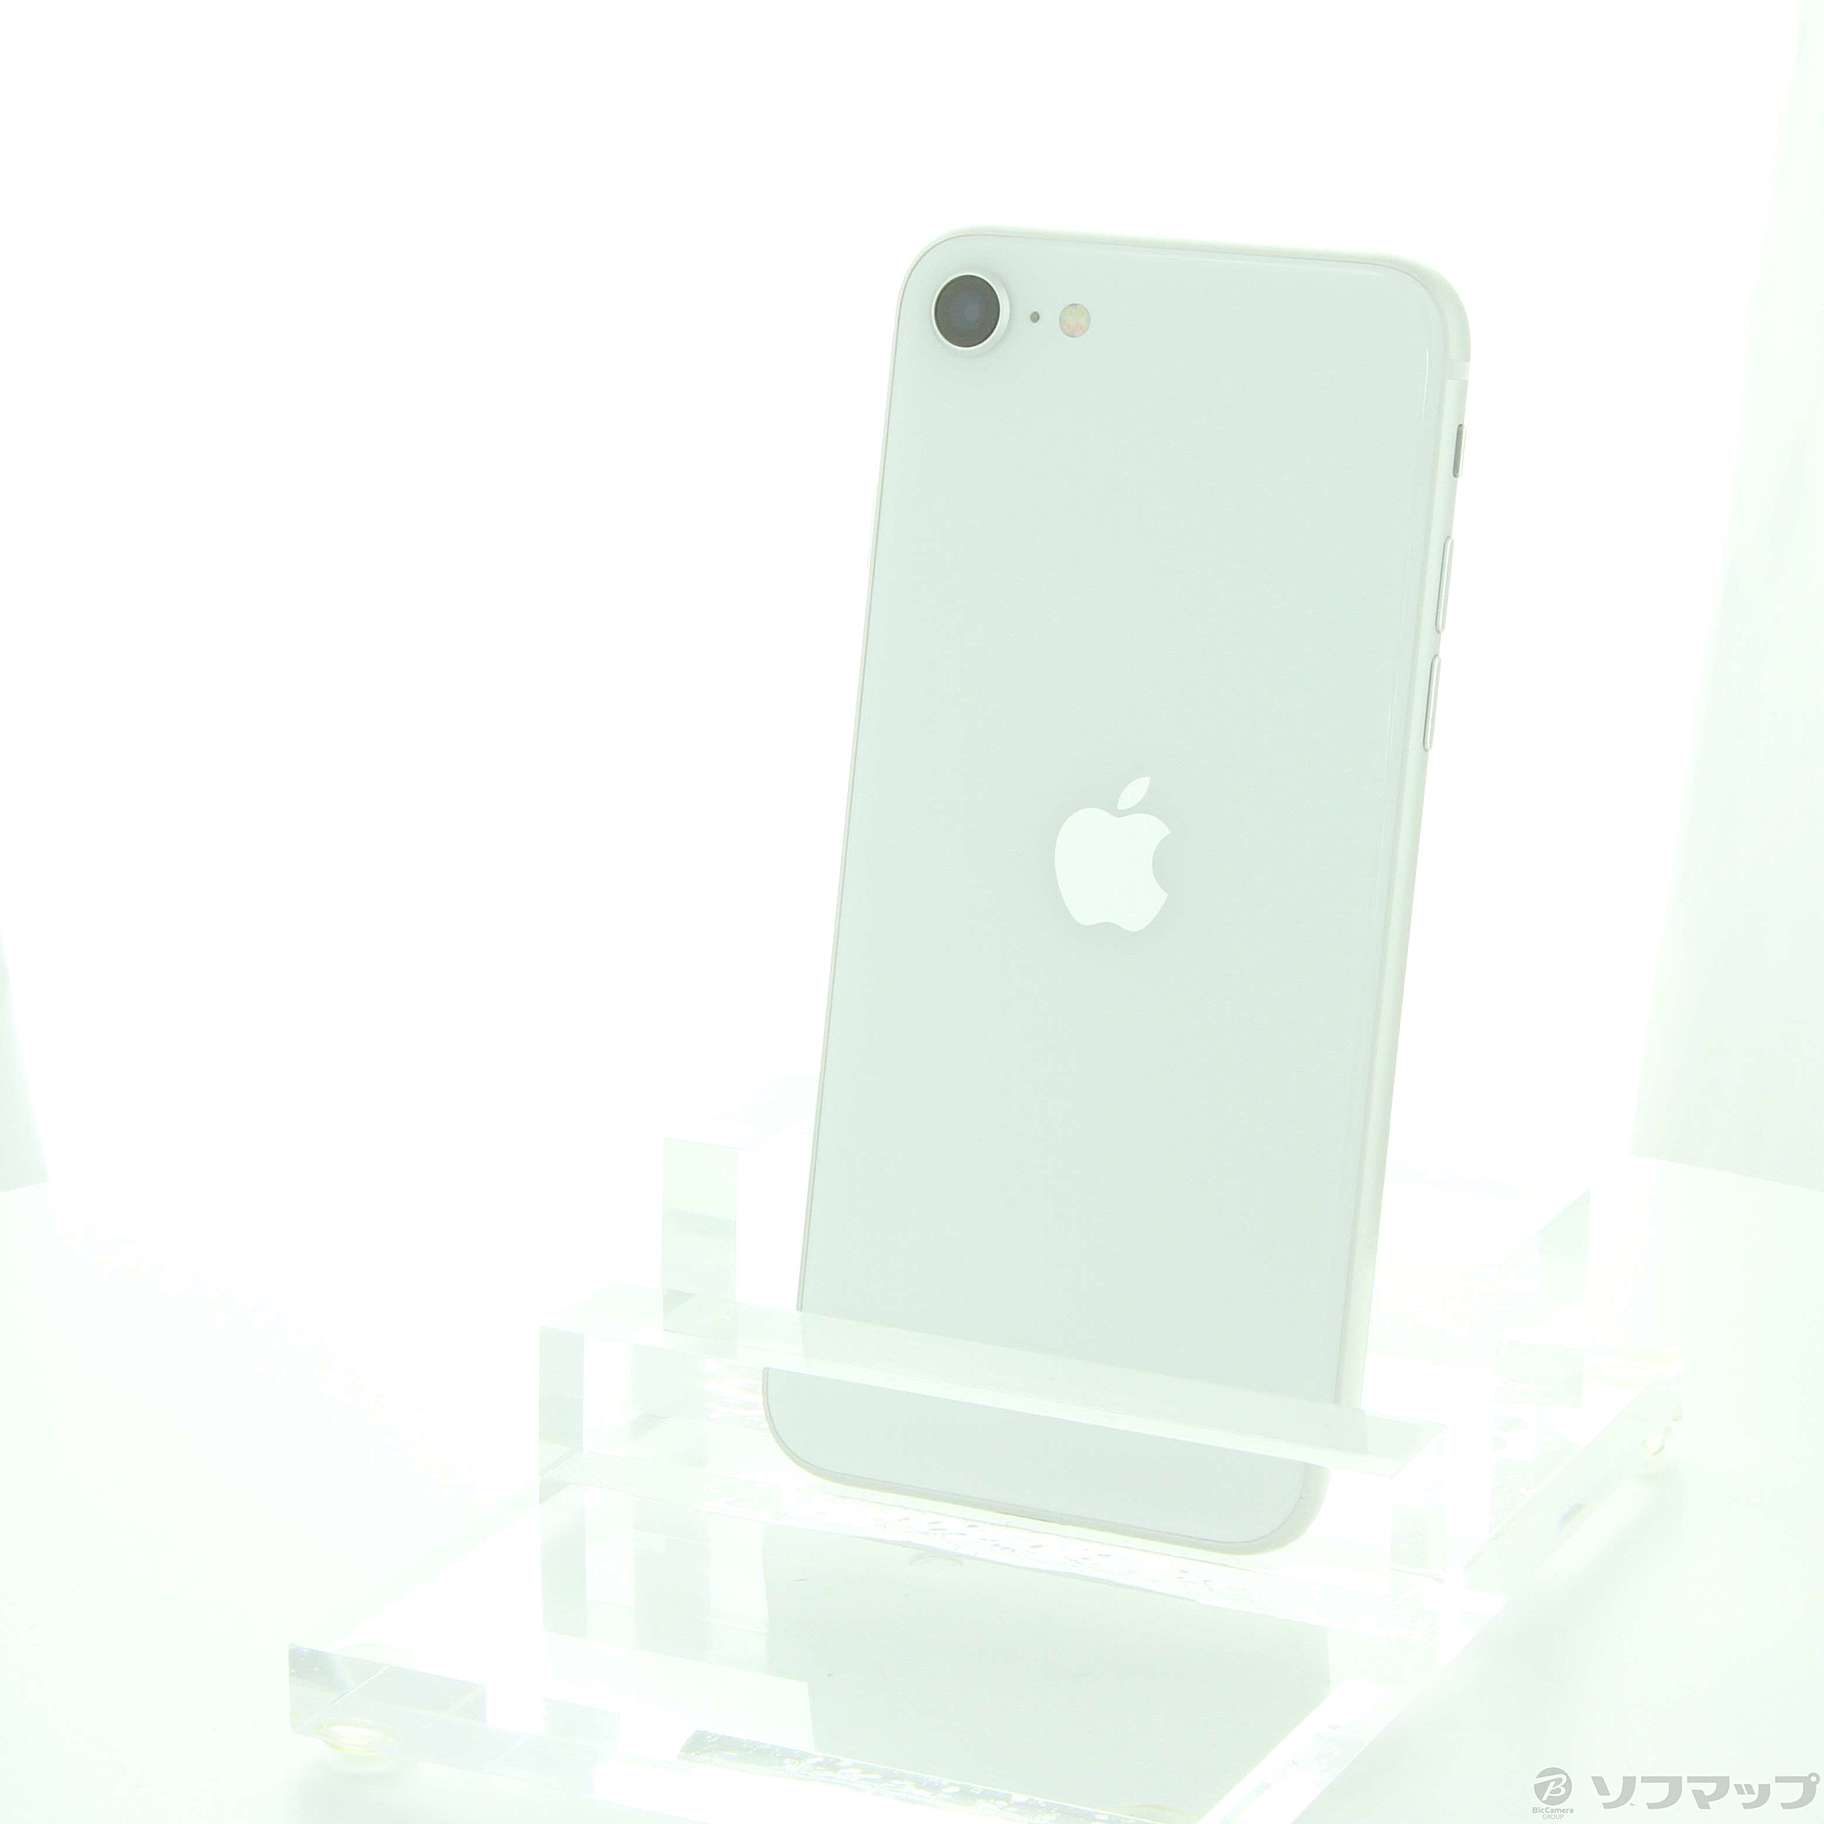 SIMフリー アップル iPhoneSE 第2世代 64GB ホワイト - zimazw.org